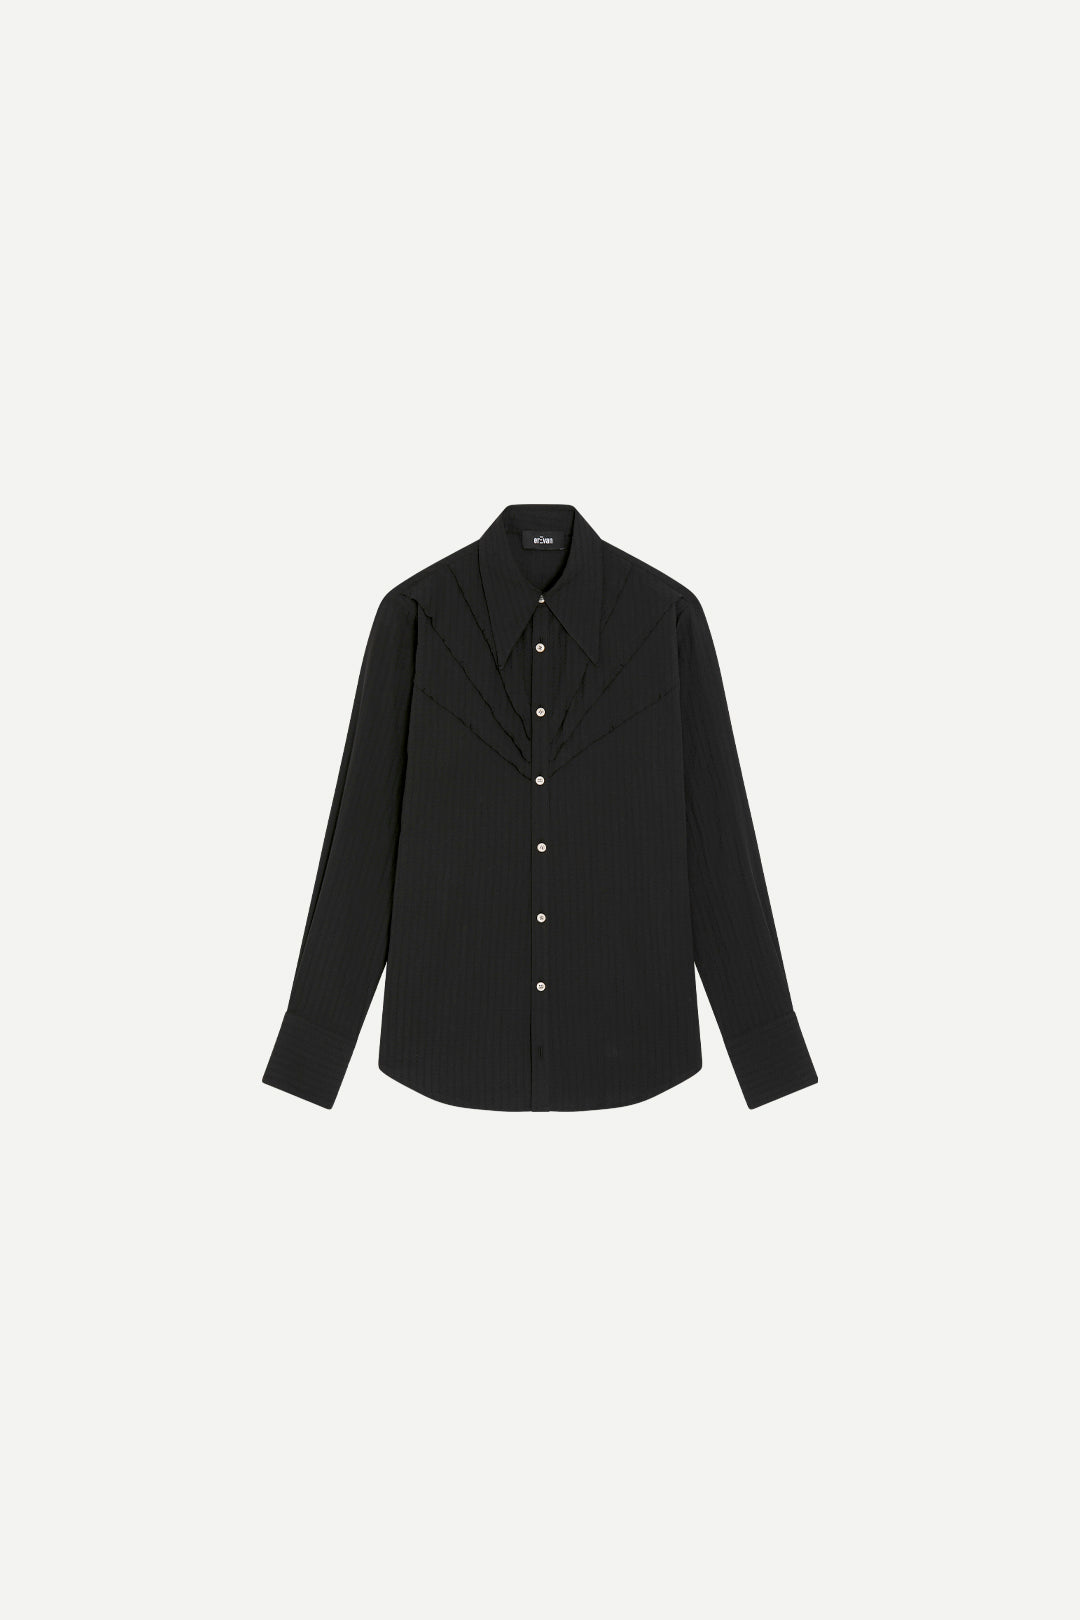 Chemise de luxe pour homme Erevan, à grand col, en toile de coton noire ,fabriquée en france